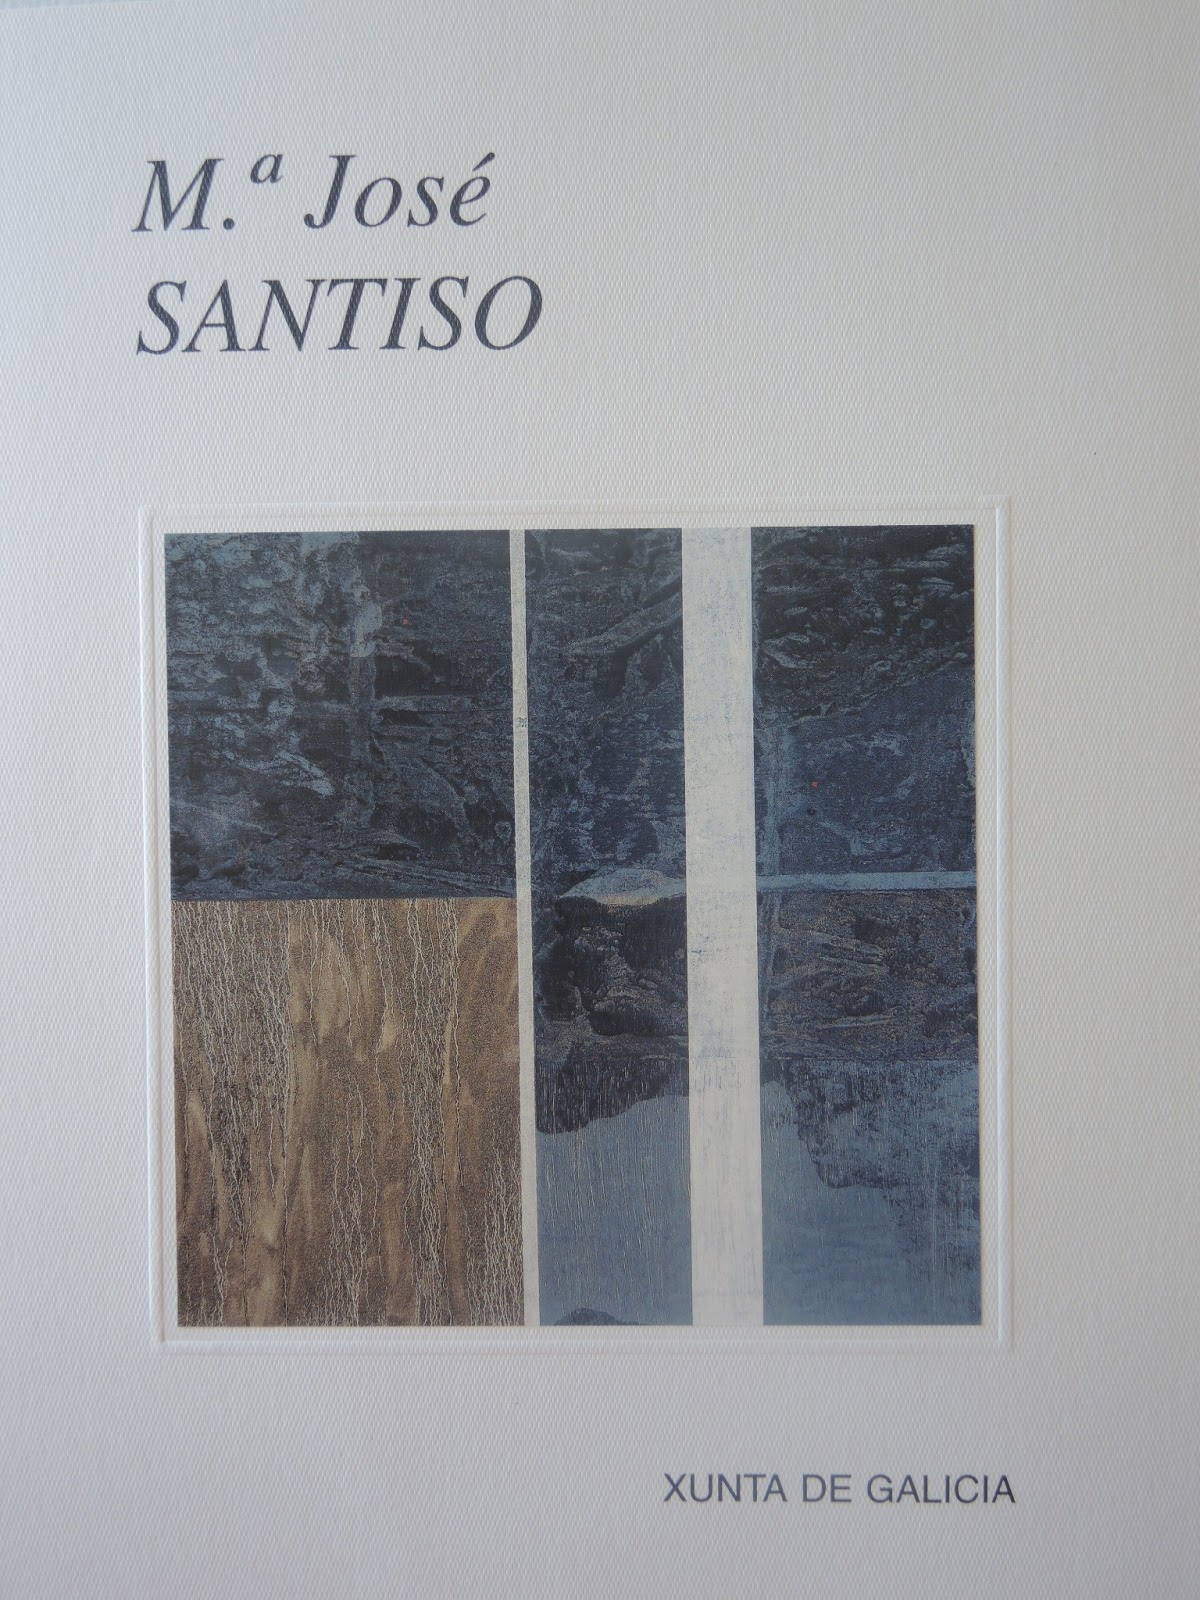 Imagen de portada del libro Mª José Santiso